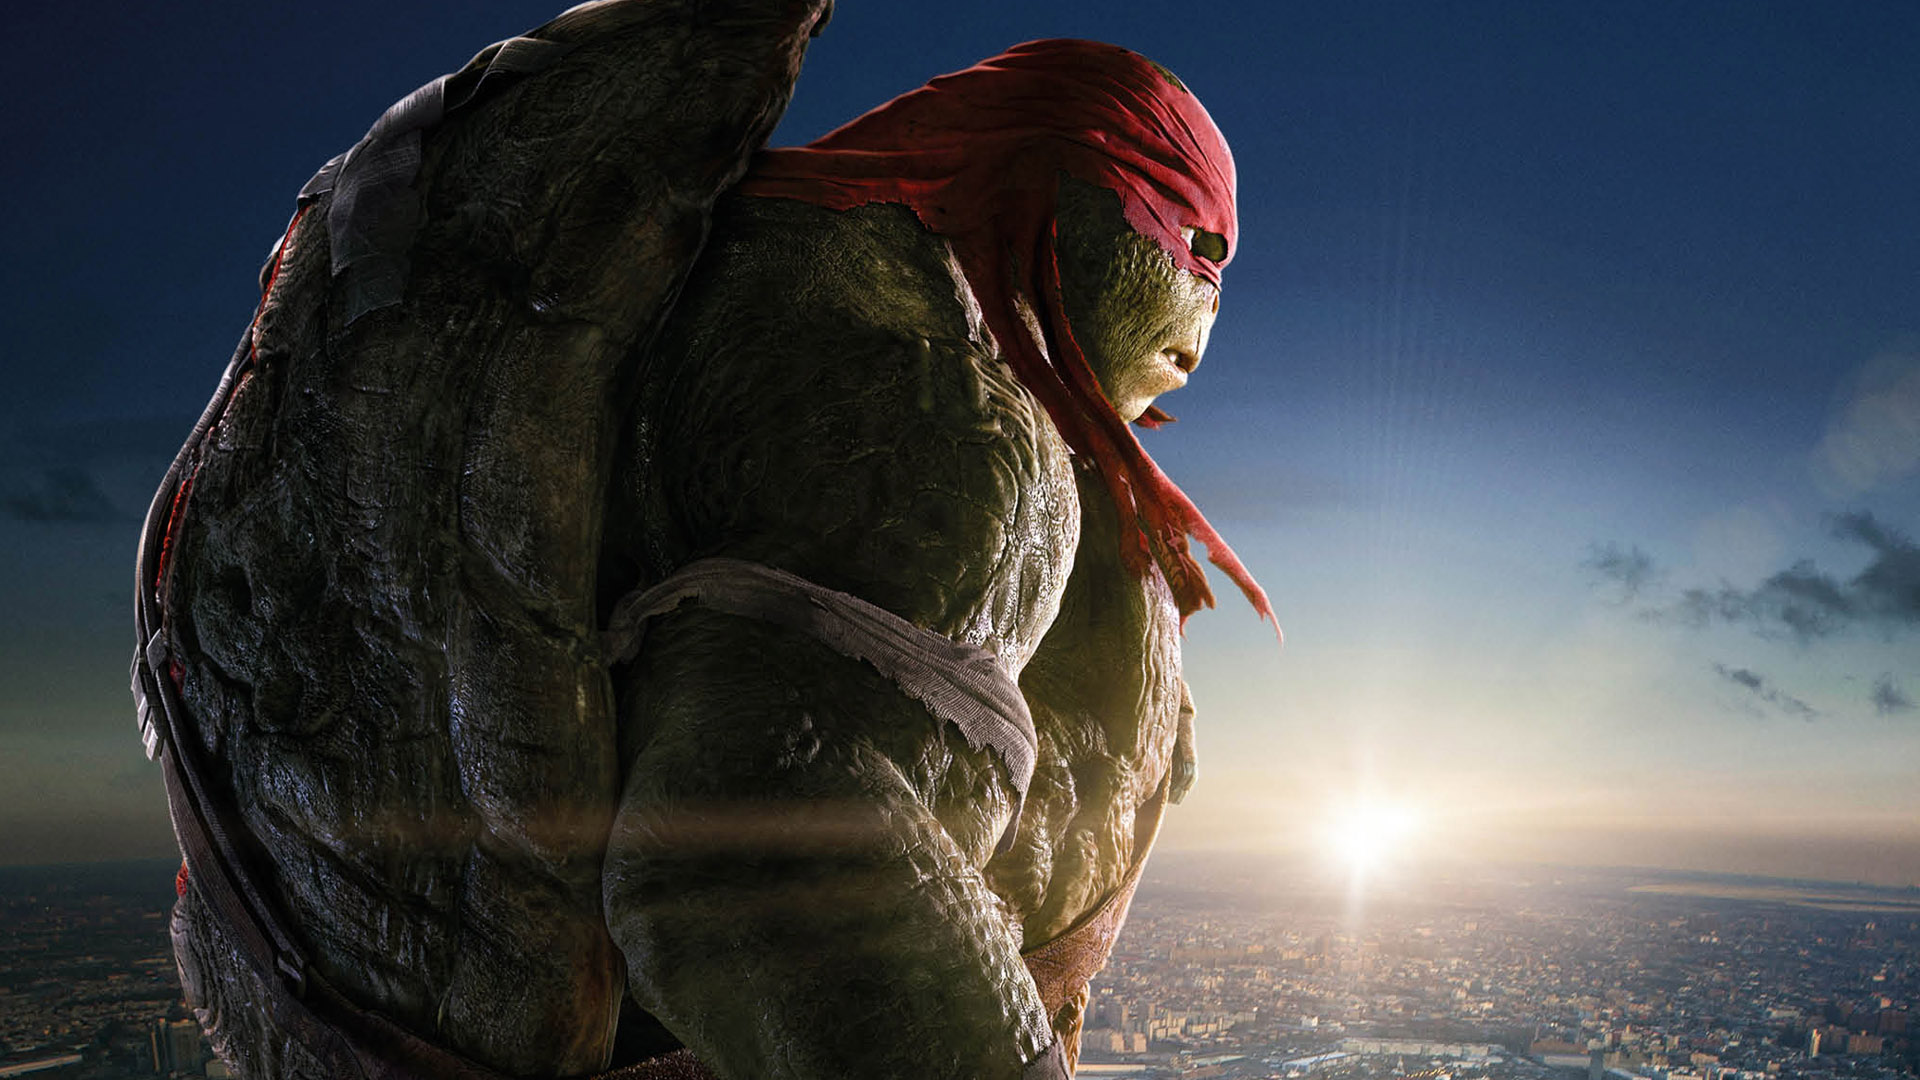 Teenage Mutant Ninja Turtles Side View - HD Wallpaper 